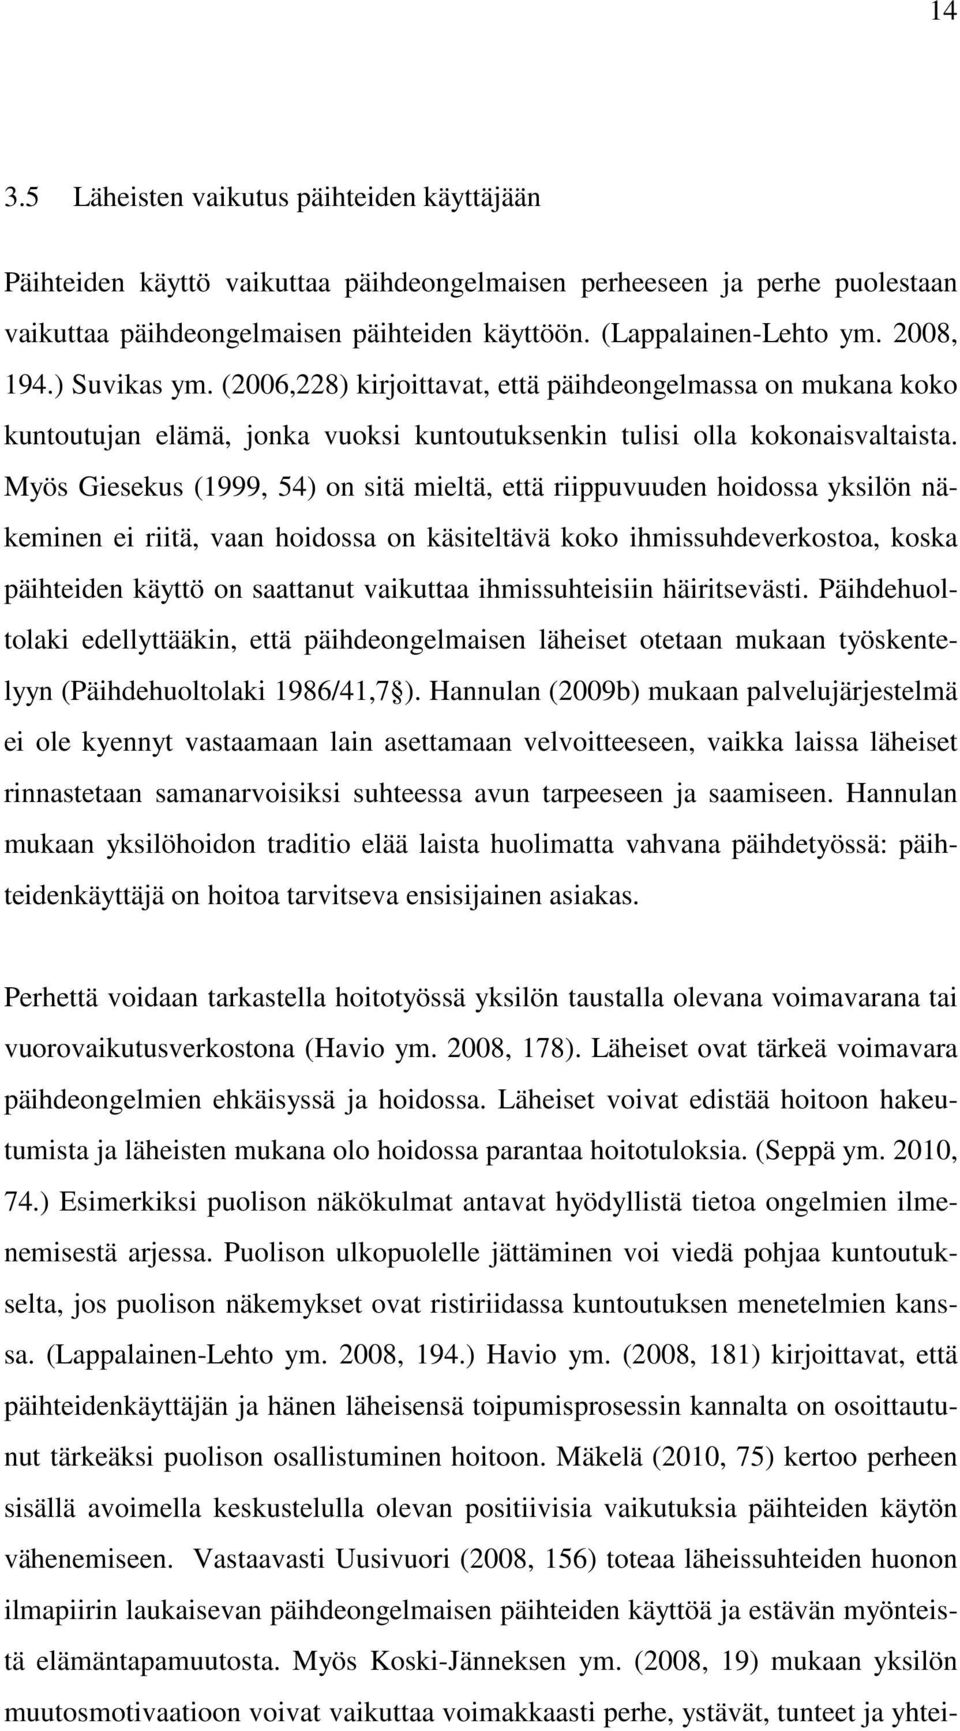 Myös Giesekus (1999, 54) on sitä mieltä, että riippuvuuden hoidossa yksilön näkeminen ei riitä, vaan hoidossa on käsiteltävä koko ihmissuhdeverkostoa, koska päihteiden käyttö on saattanut vaikuttaa